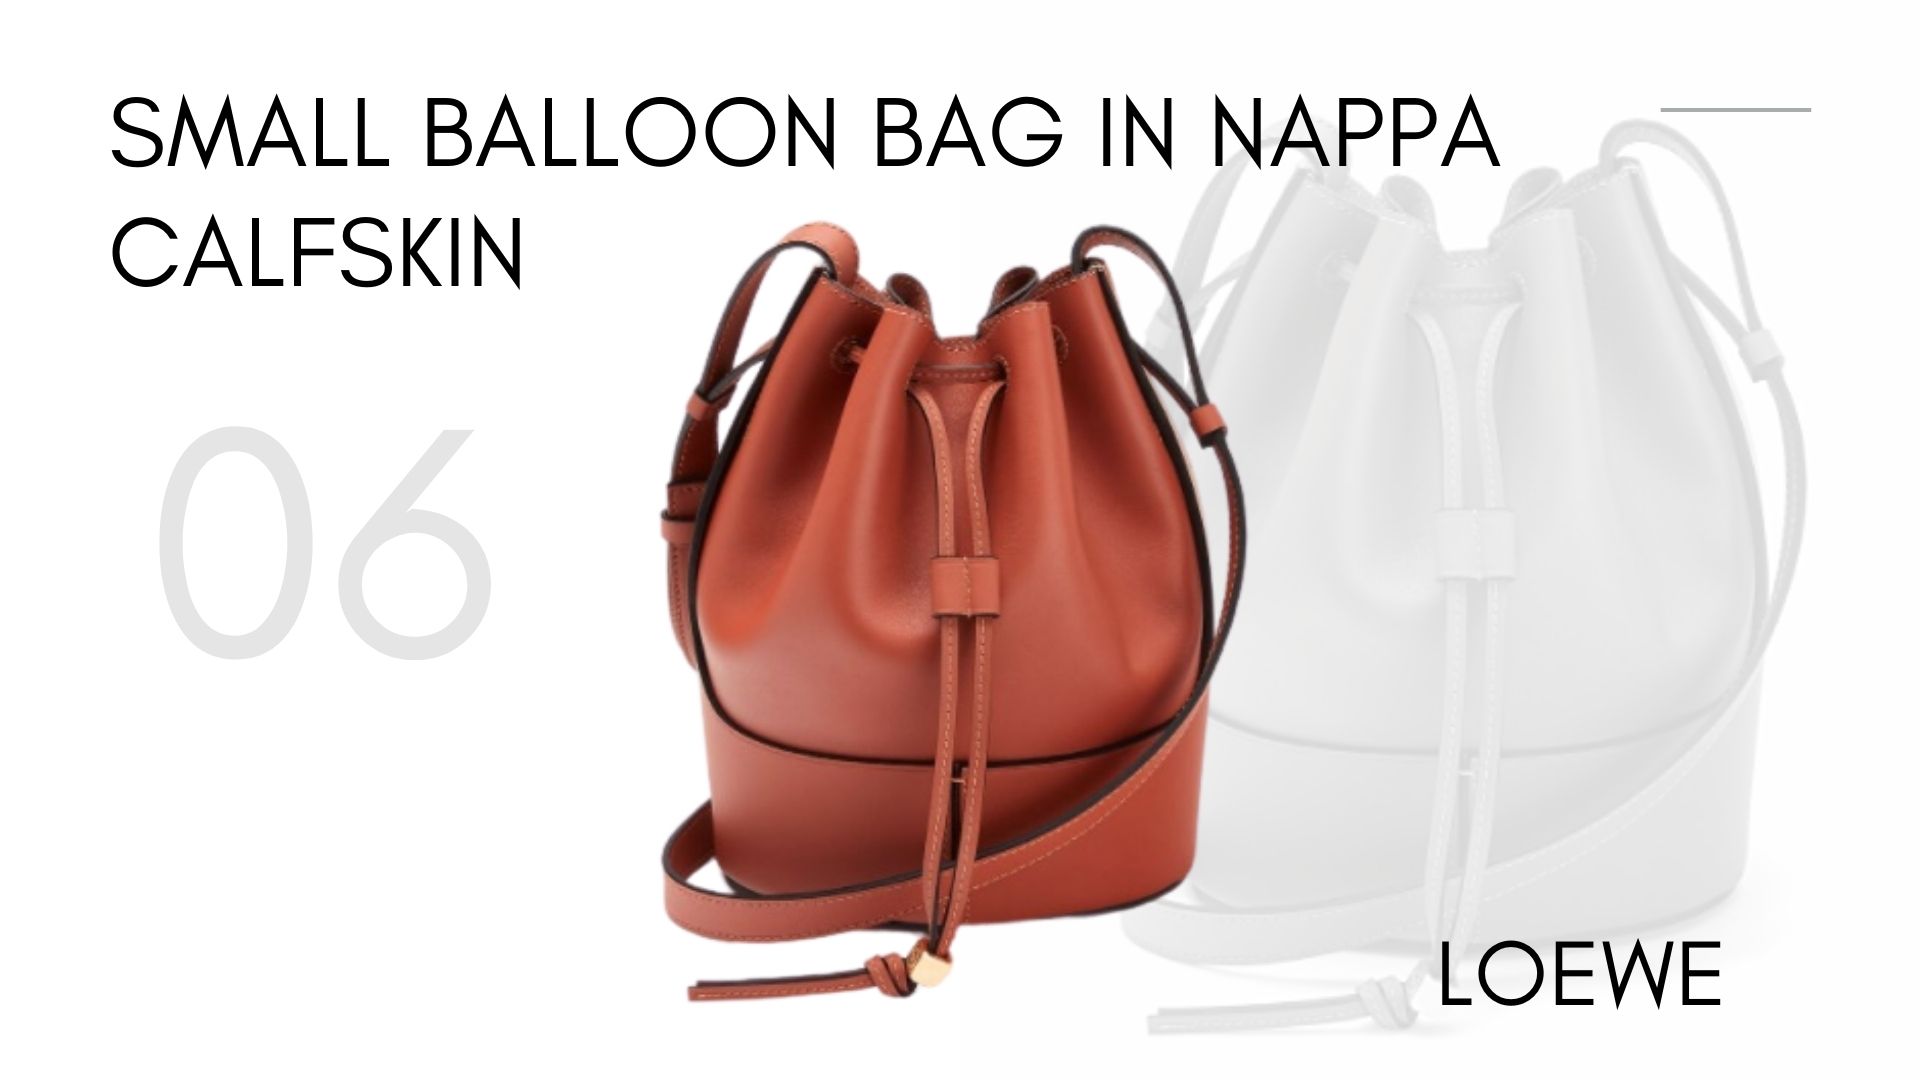 Small Balloon bag in nappa calfskin - กระเป่าโลเอเว่ 